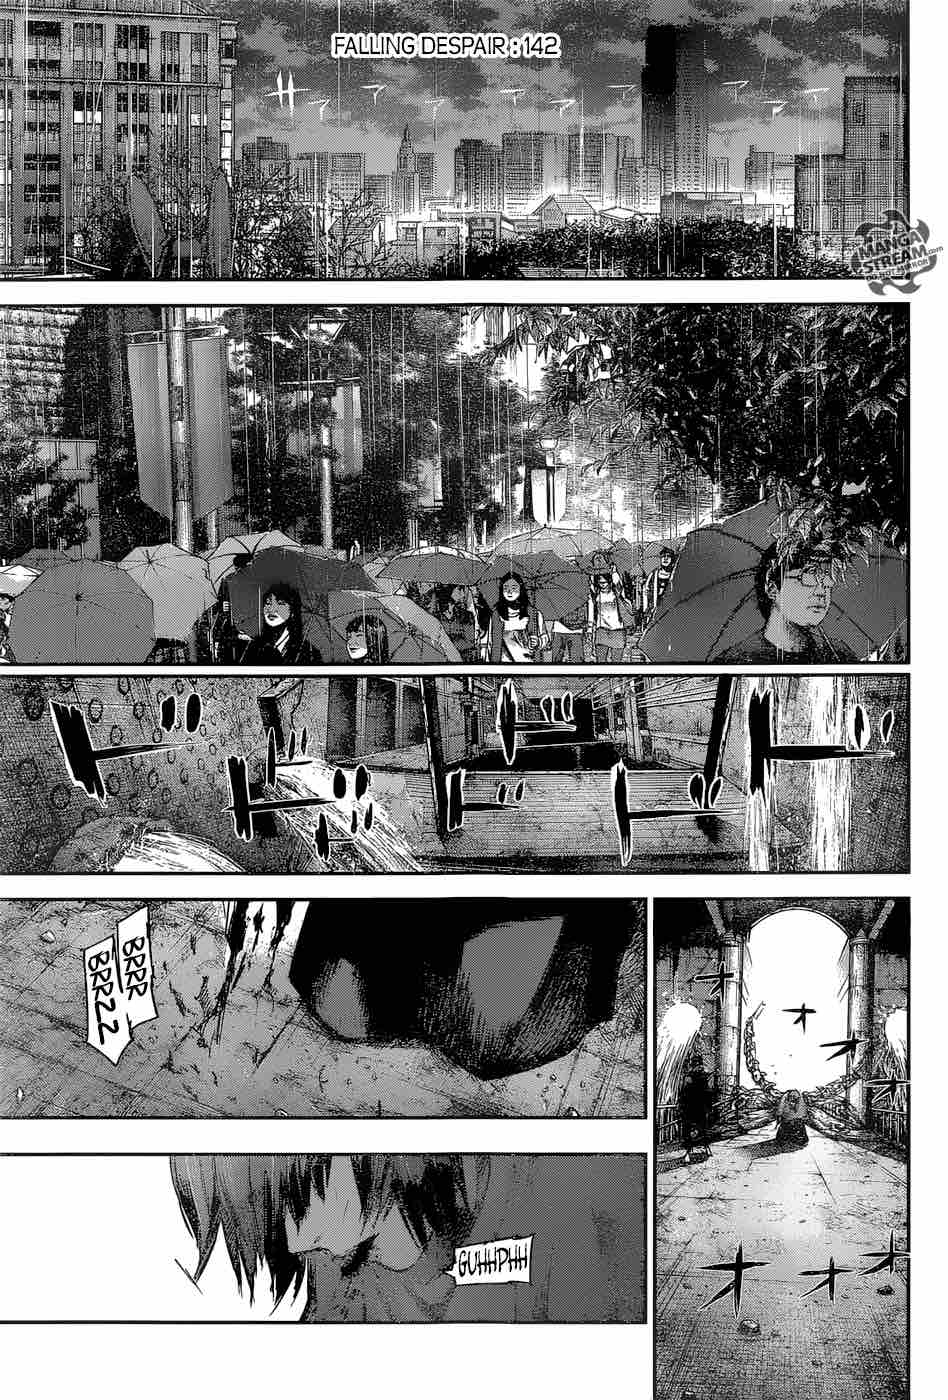 Tokyo Ghoul Re Chapter 142 Falling Despair Tokyo Ghoul Manga Online